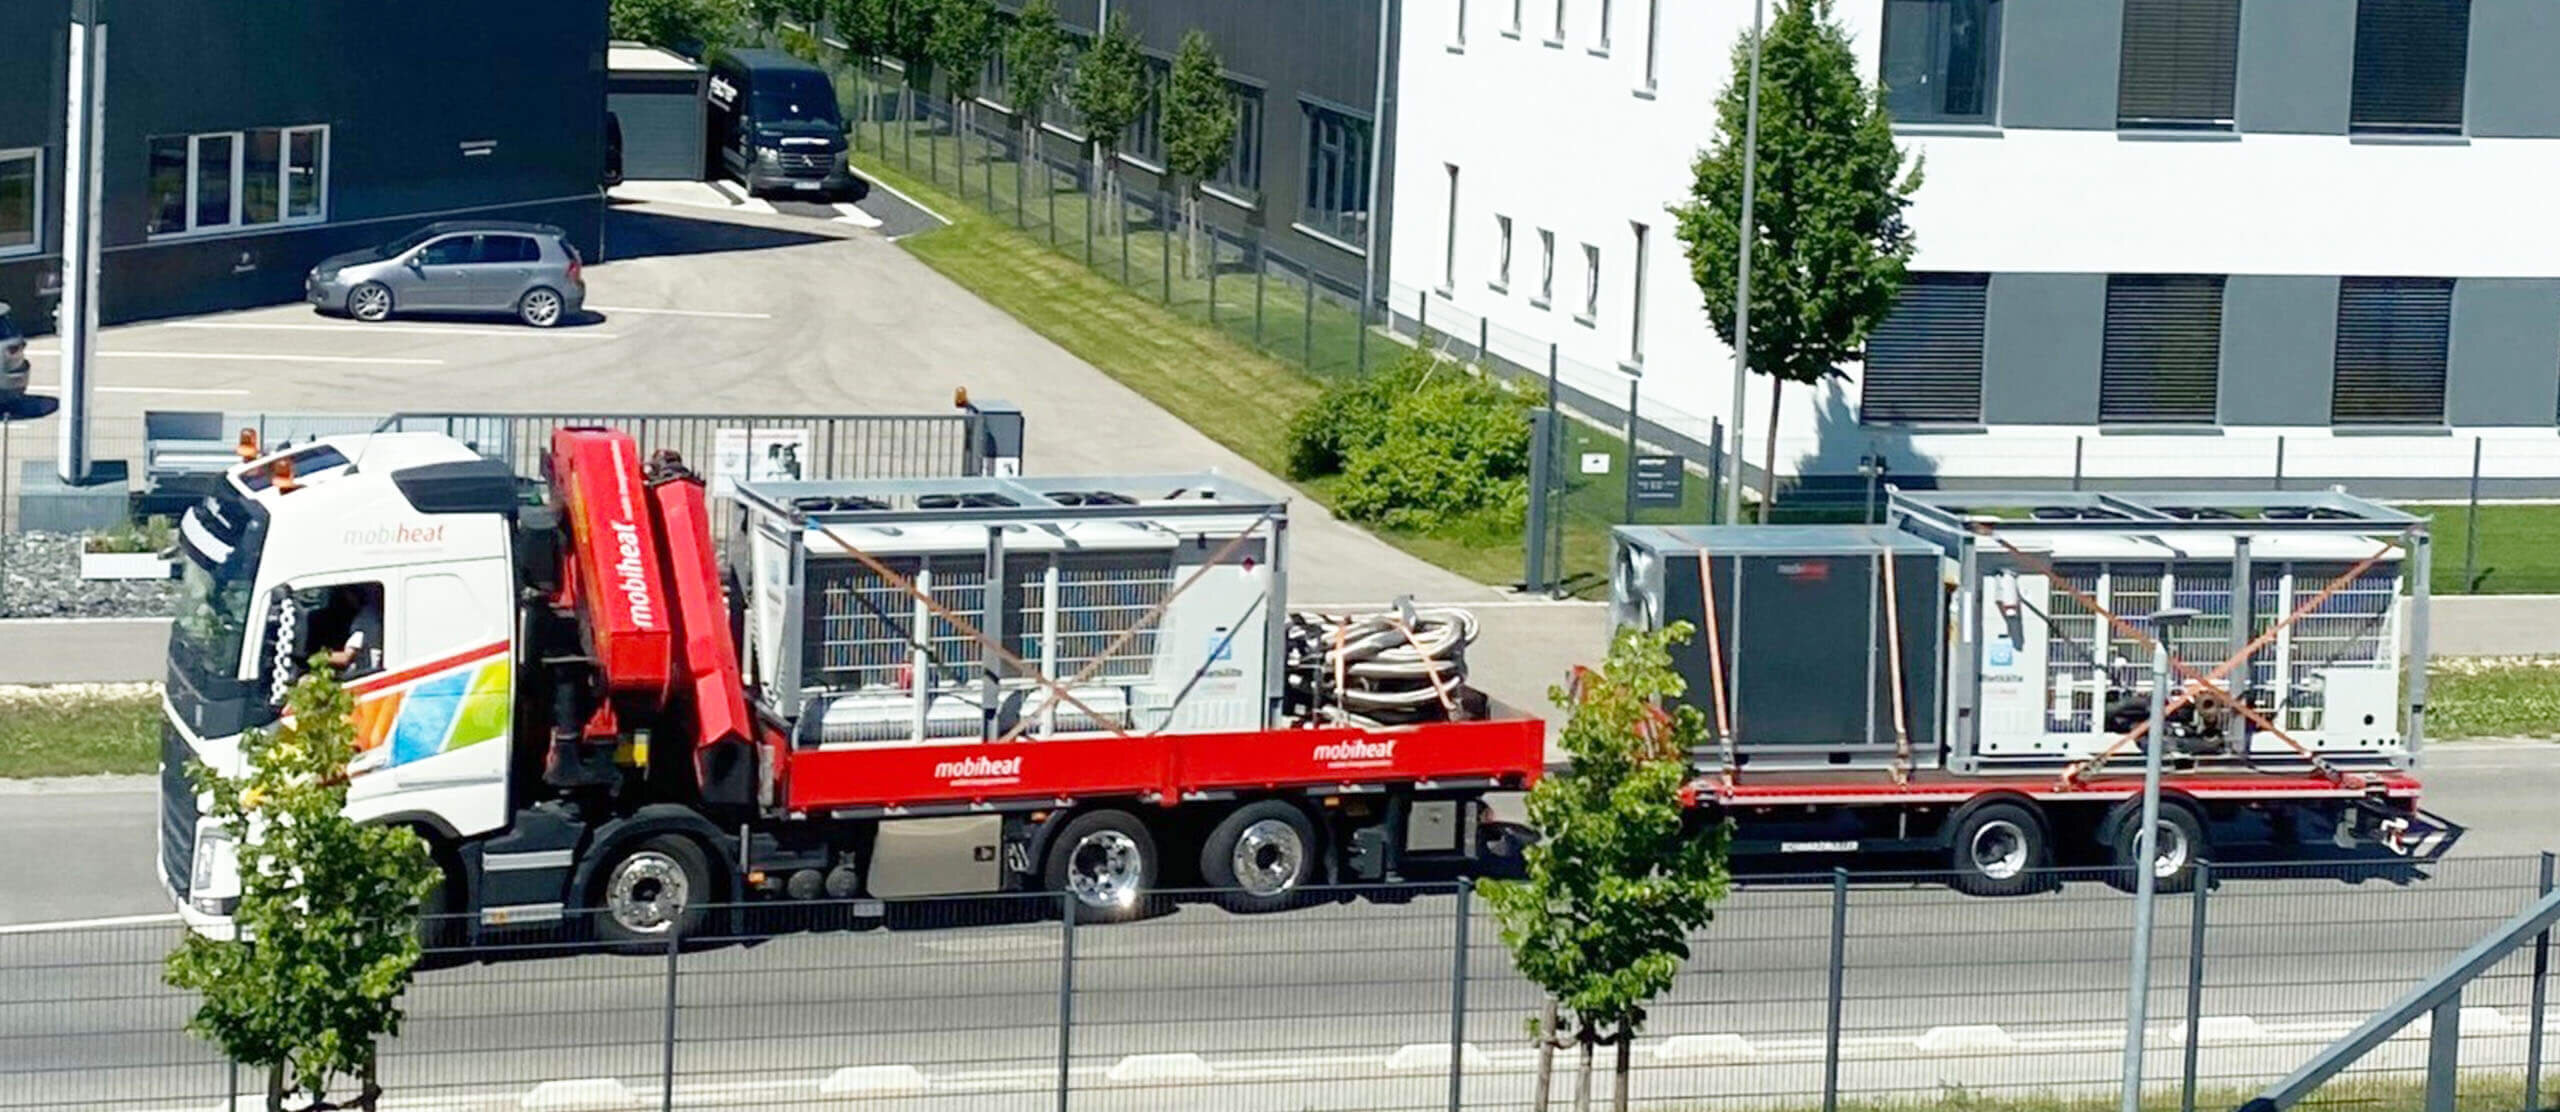 Anlieferung per LKW - mobile Kältetechnik - Kaltwassersatz | © mobiheat GmbH